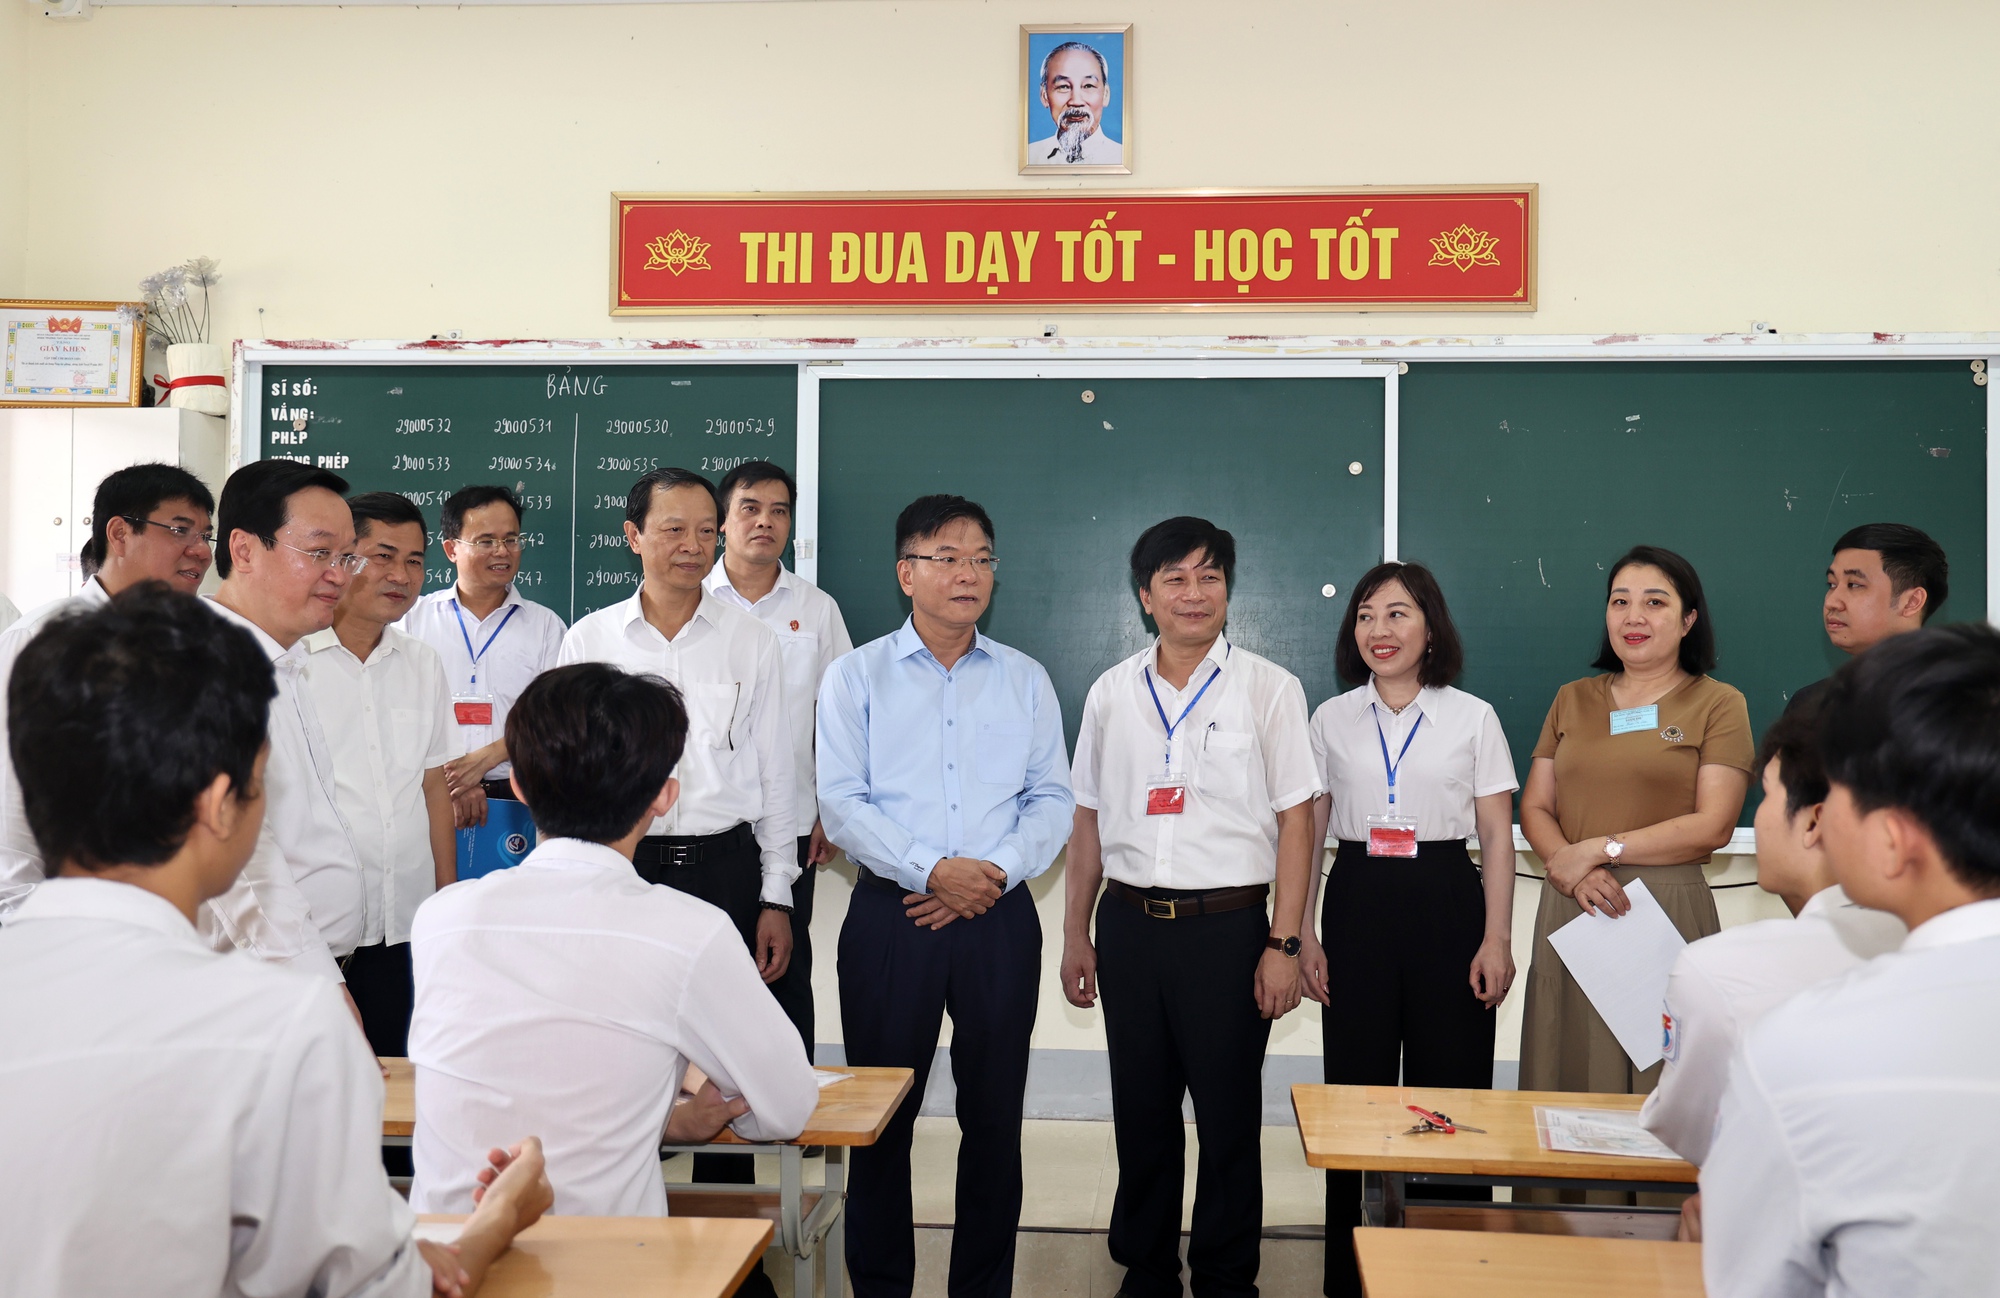 Phó Thủ tướng Lê Thành Long: Cố gắng xử lý tốt từ những việc nhỏ nhất, trong mọi trường hợp, không tạo sự căng thẳng cho các em học sinh- Ảnh 1.